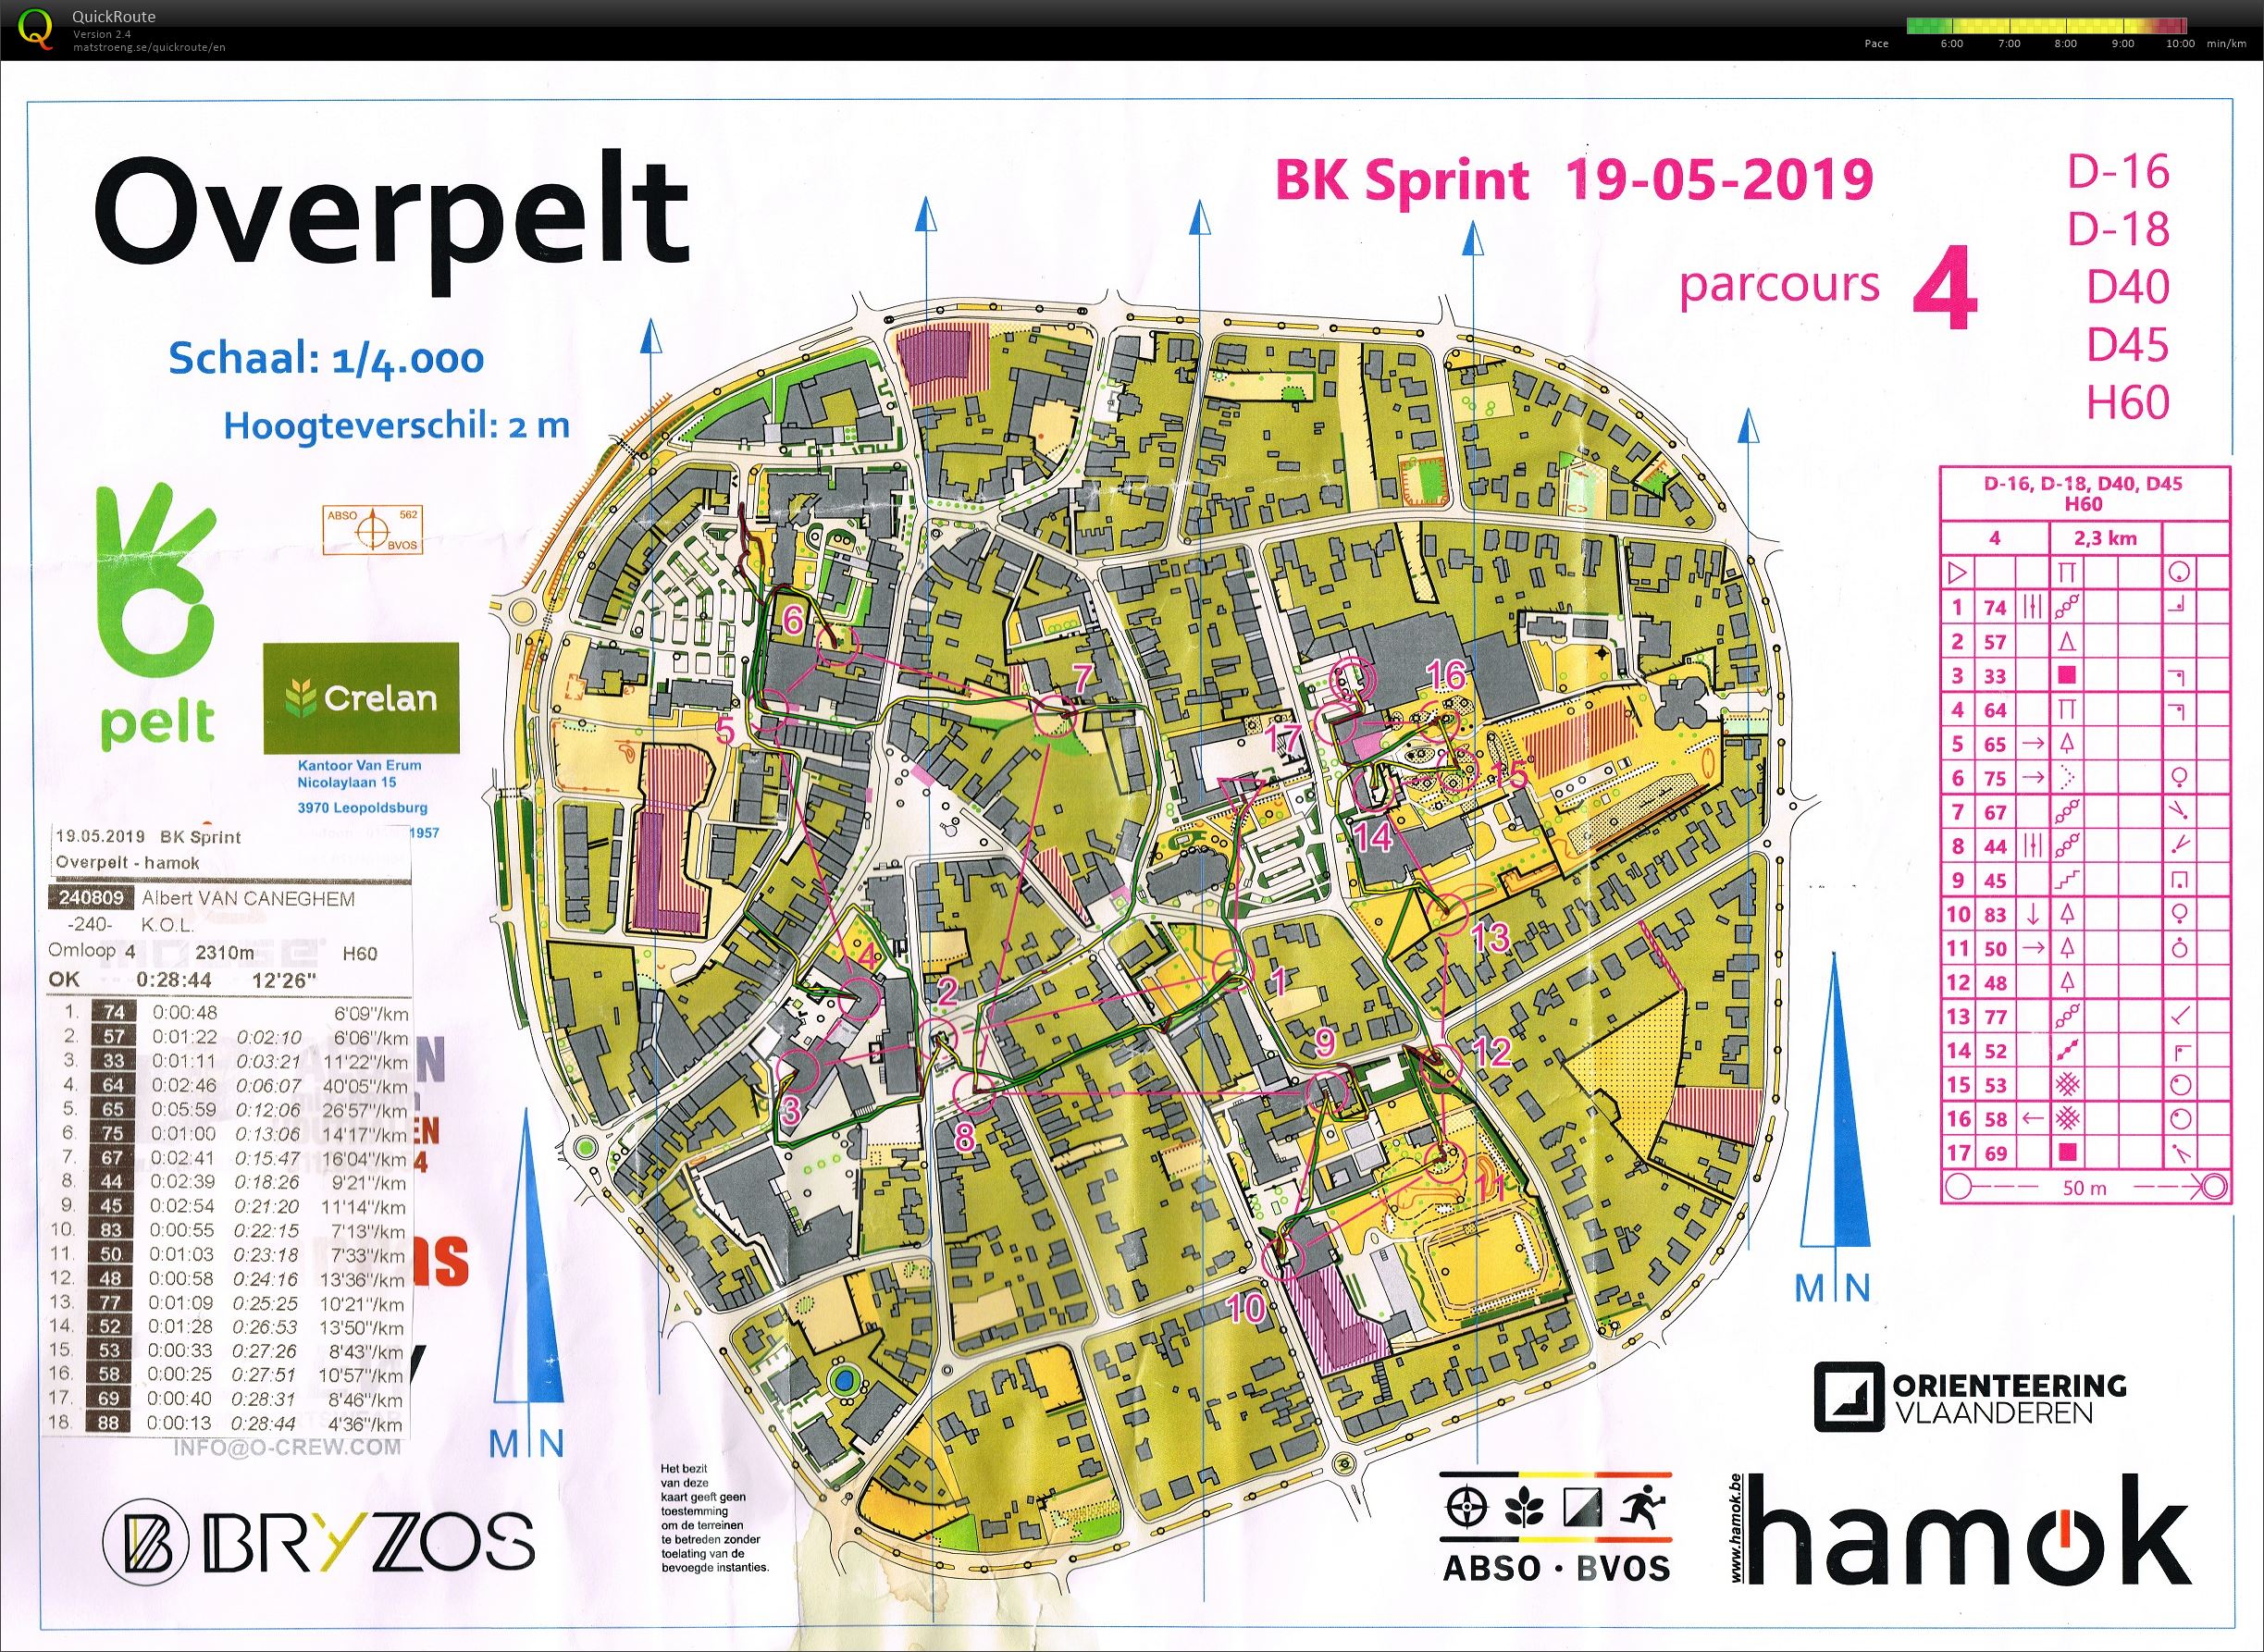 Overpelt BK Sprint (19-05-2019)